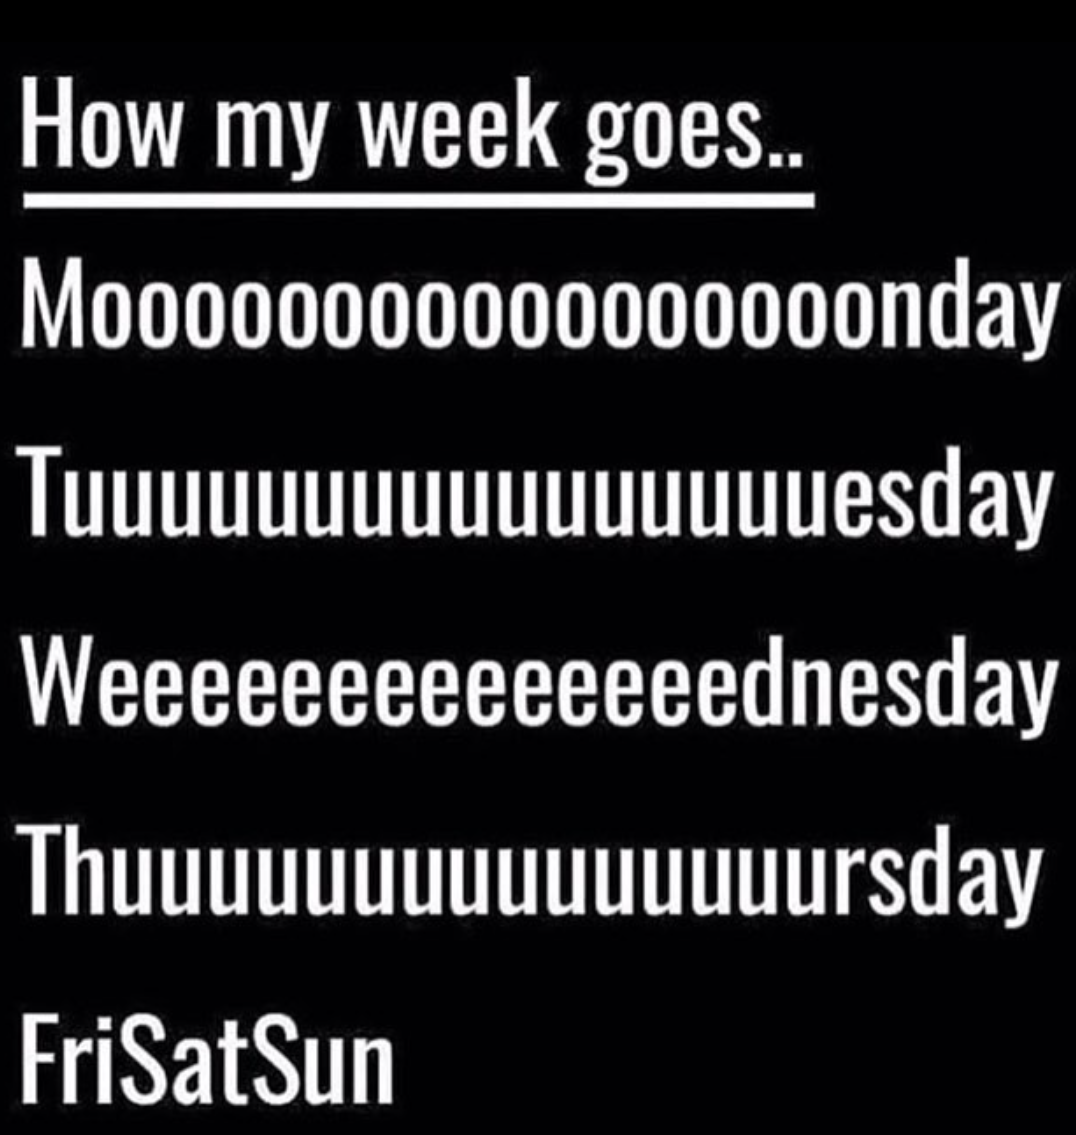 a meme that says "how my week goes.. mooooonday, tuuuuuuuesday, weeeeeednesday, thuuuuuursday, Frisatsun"